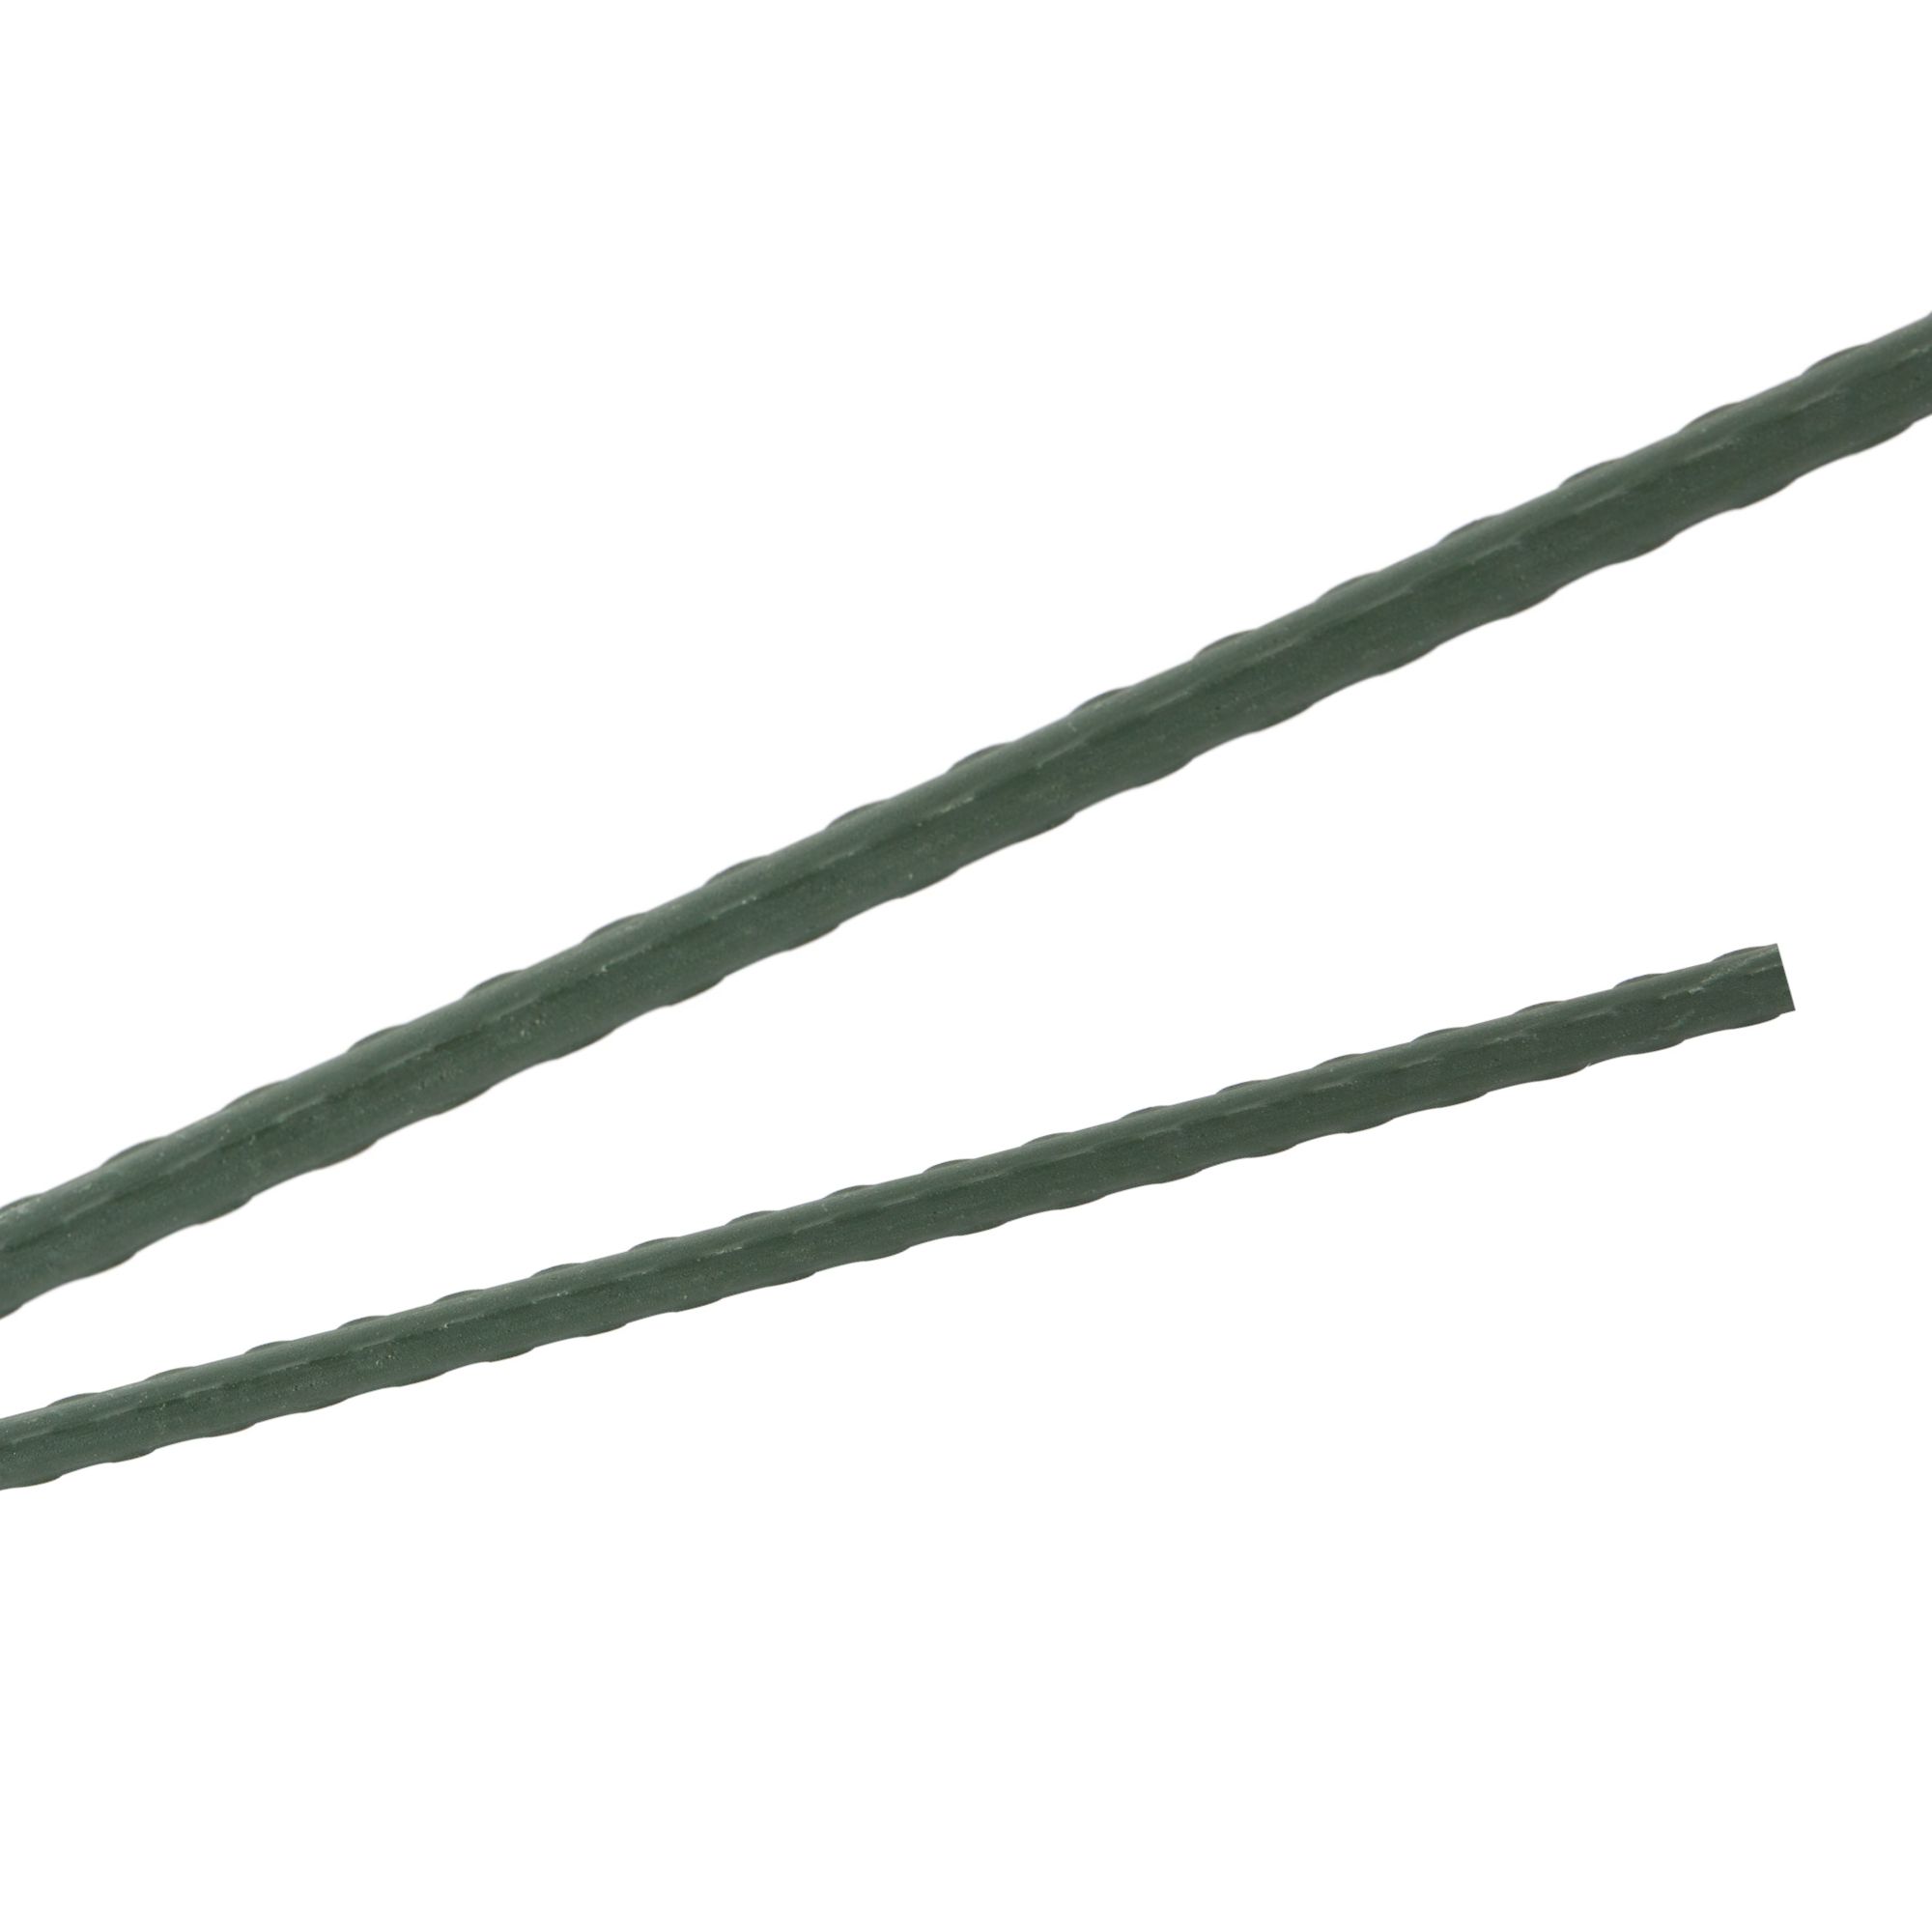 Tyč podpěrná, 8mm, 90cm, kov+PVC, zelená 0.052000 Kg GIGA Sklad20 211783 144